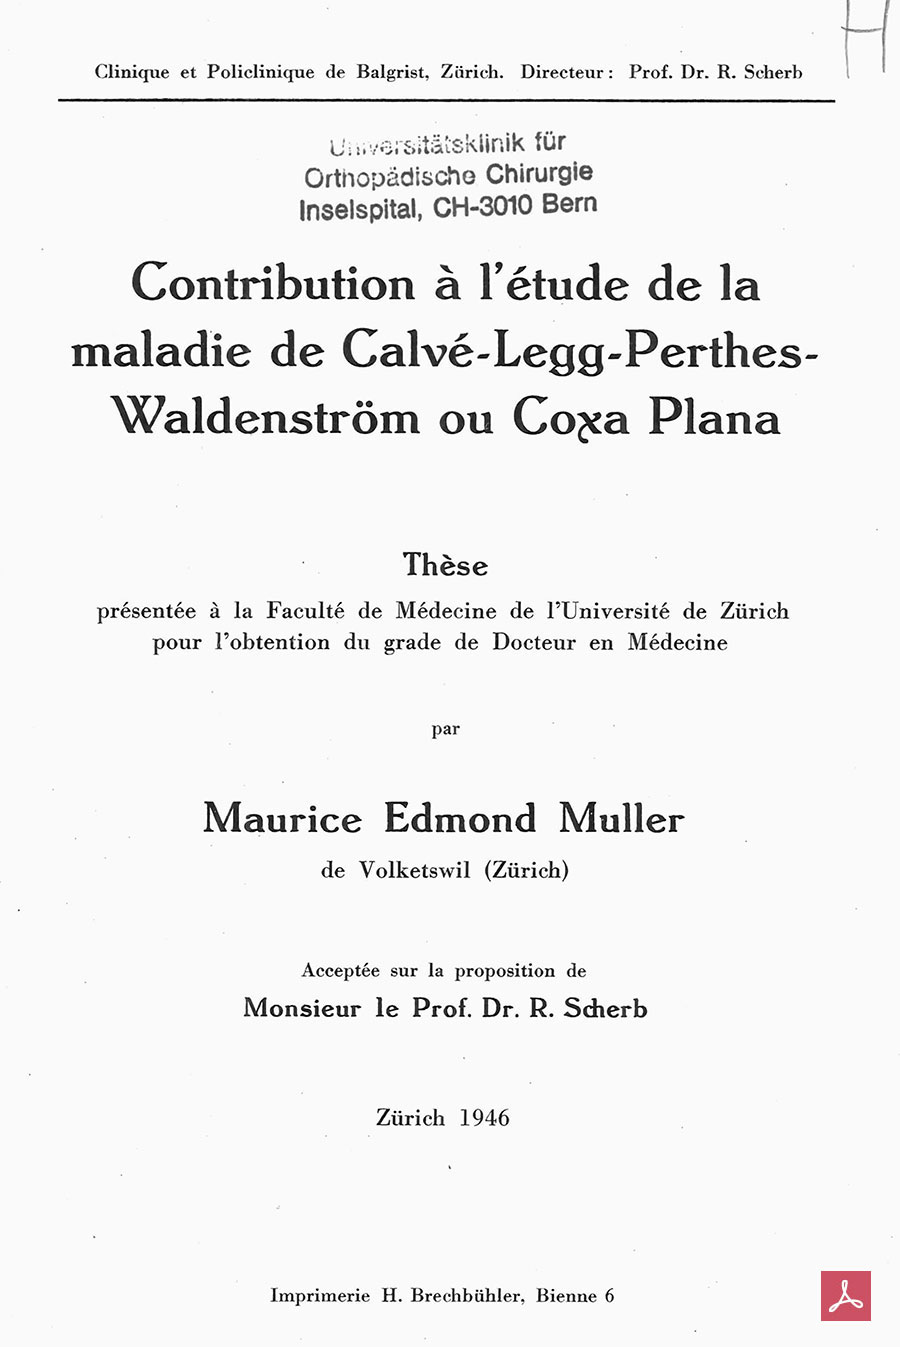 Doktorarbeit von Maurice Müller